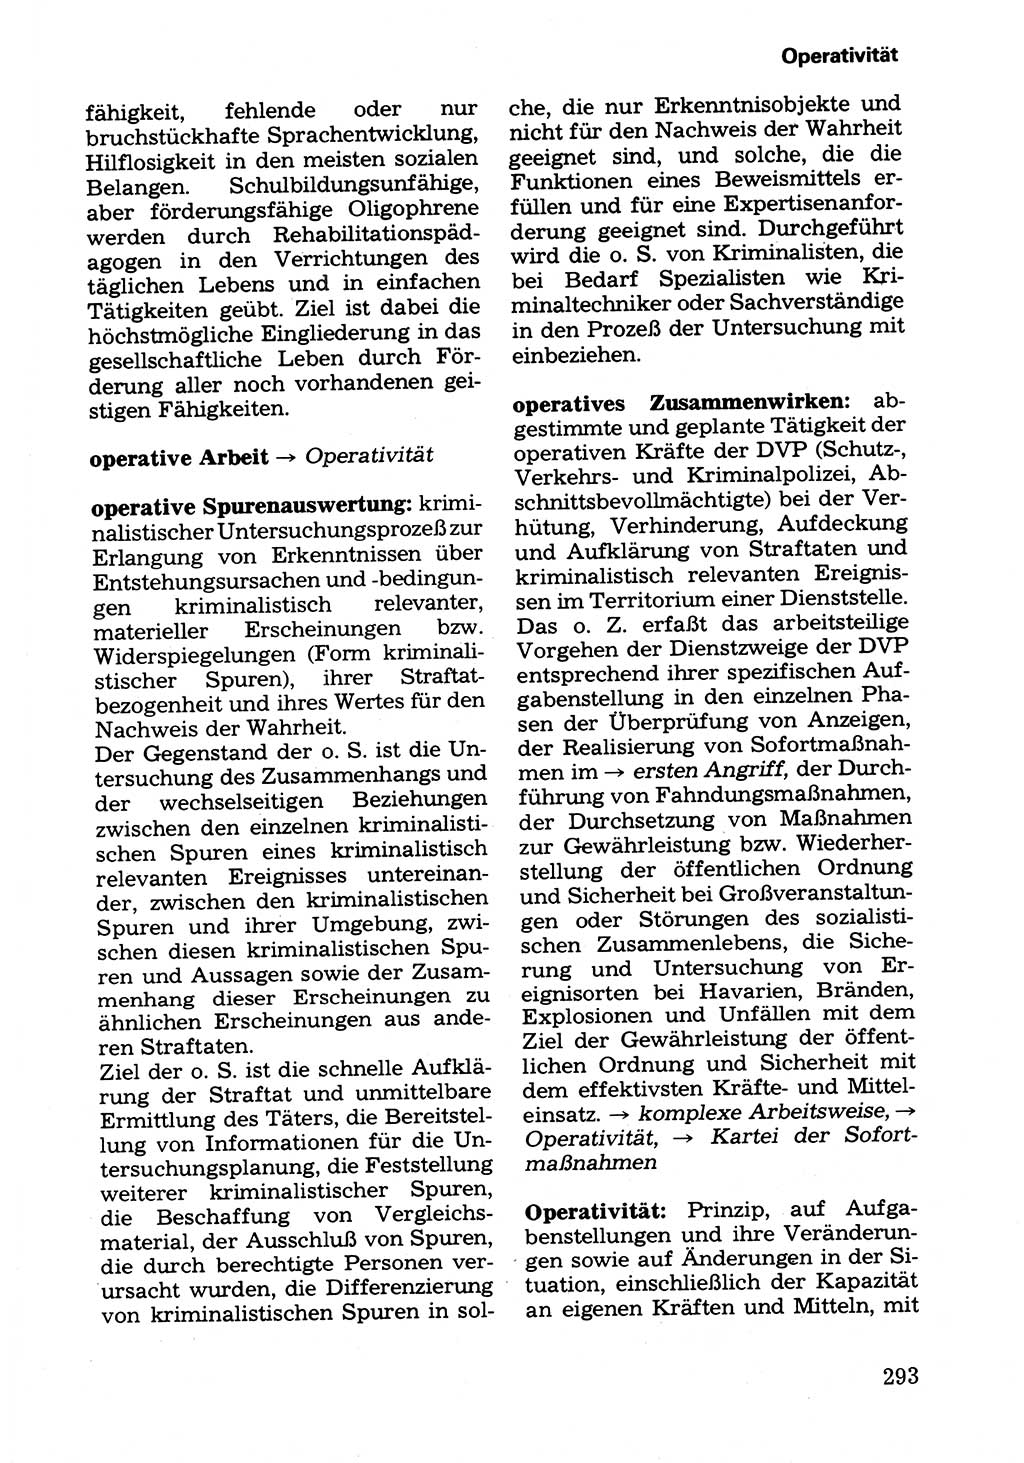 Wörterbuch der sozialistischen Kriminalistik [Deutsche Demokratische Republik (DDR)] 1981, Seite 293 (Wb. soz. Krim. DDR 1981, S. 293)